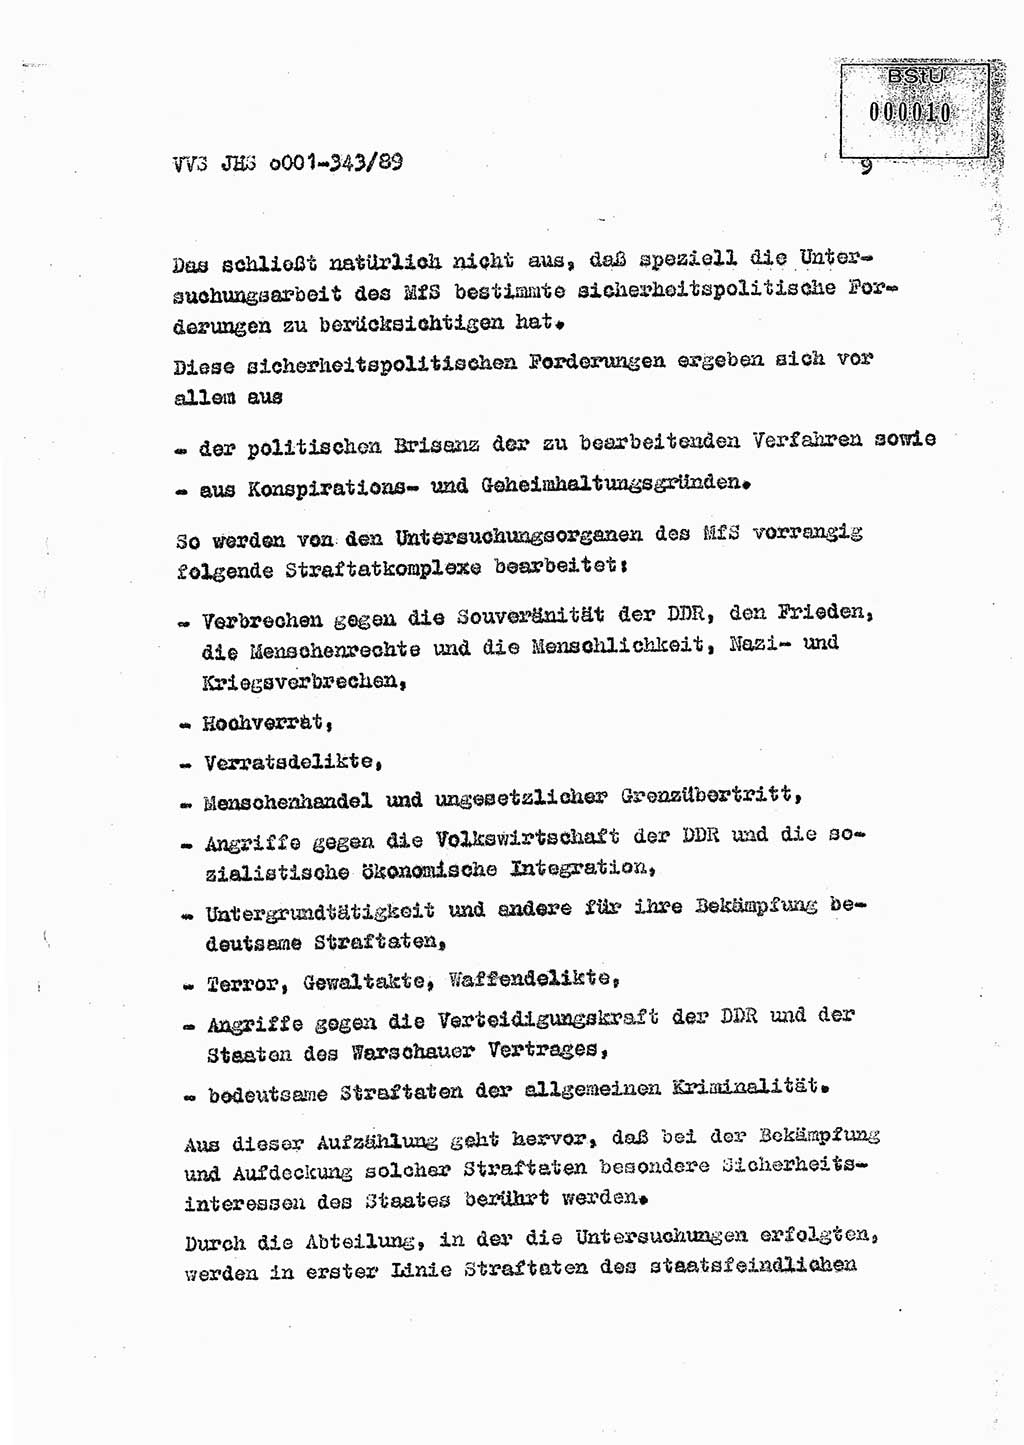 Diplomarbeit Offiziersschüler Axel Henschke (HA Ⅸ/9), Ministerium für Staatssicherheit (MfS) [Deutsche Demokratische Republik (DDR)], Juristische Hochschule (JHS), Vertrauliche Verschlußsache (VVS) o001-343/89, Potsdam 1989, Seite 9 (Dipl.-Arb. MfS DDR JHS VVS o001-343/89 1989, S. 9)